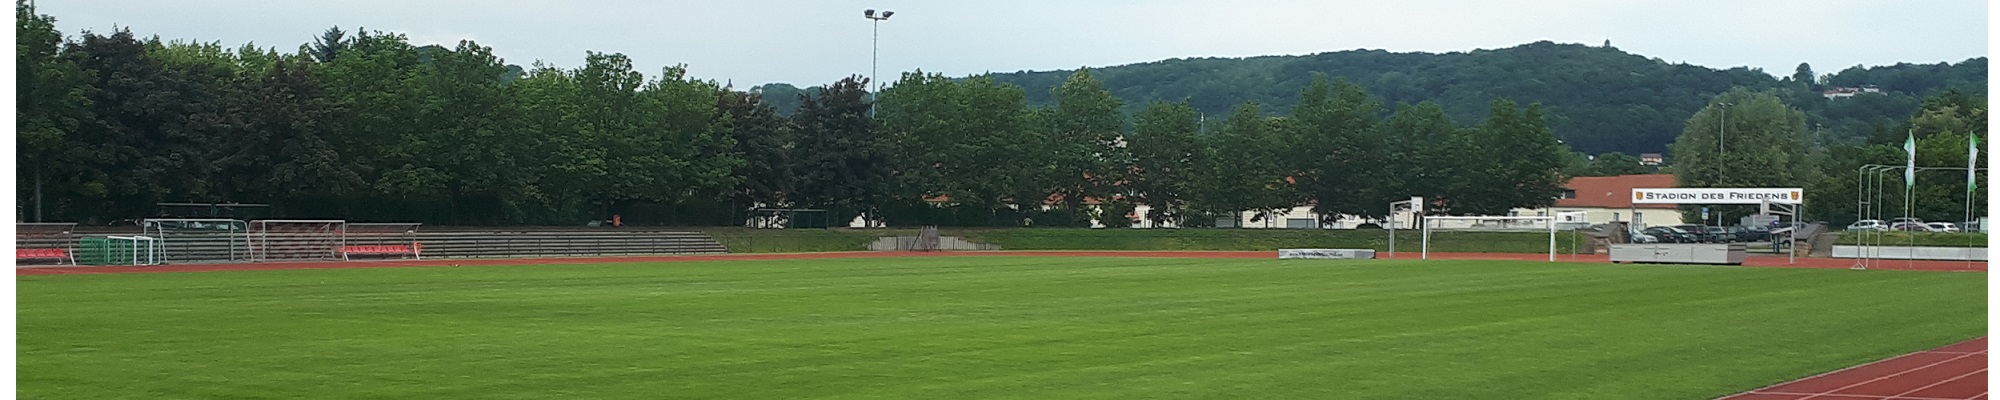 Kreisfachverband Leichtathletik Sächsische Schweiz - Osterzgebirge